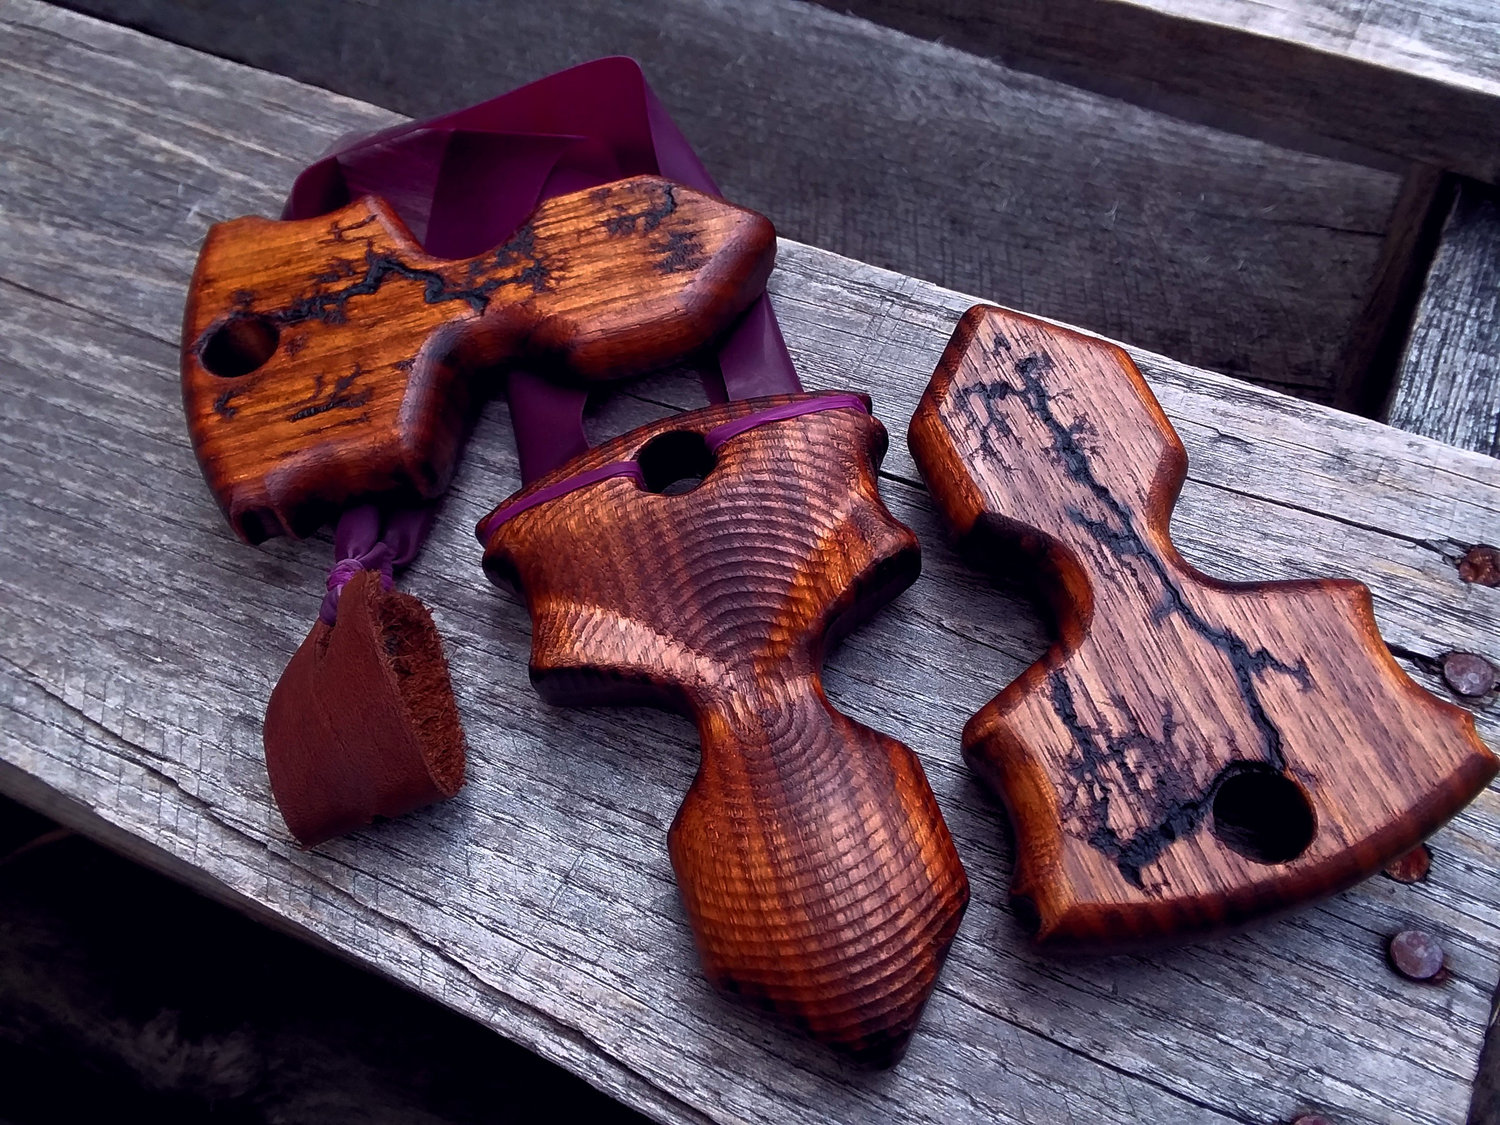 wooden slingshot designs